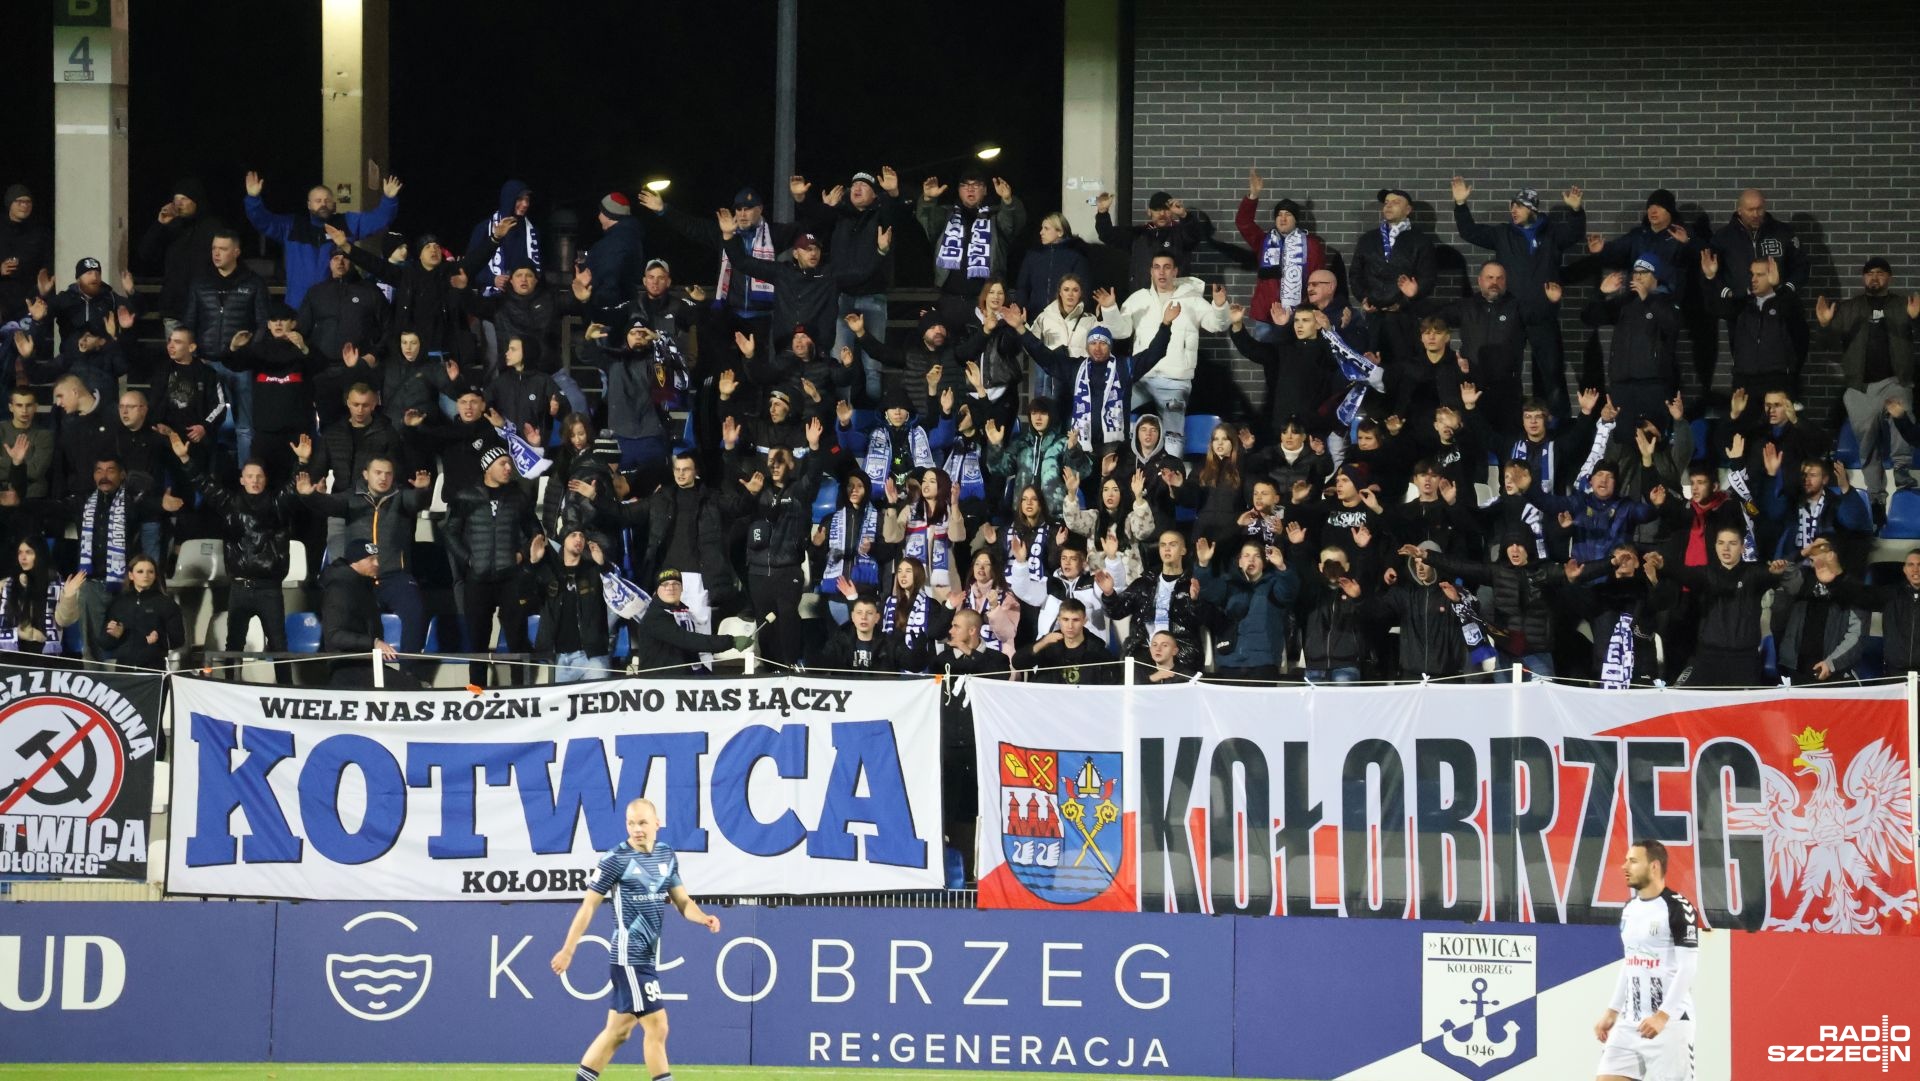 Po zimowej przerwie do ligowego grania powrócą piłkarze Kotwicy Kołobrzeg. Lider II ligi podejmie Chojniczankę Chojnice.